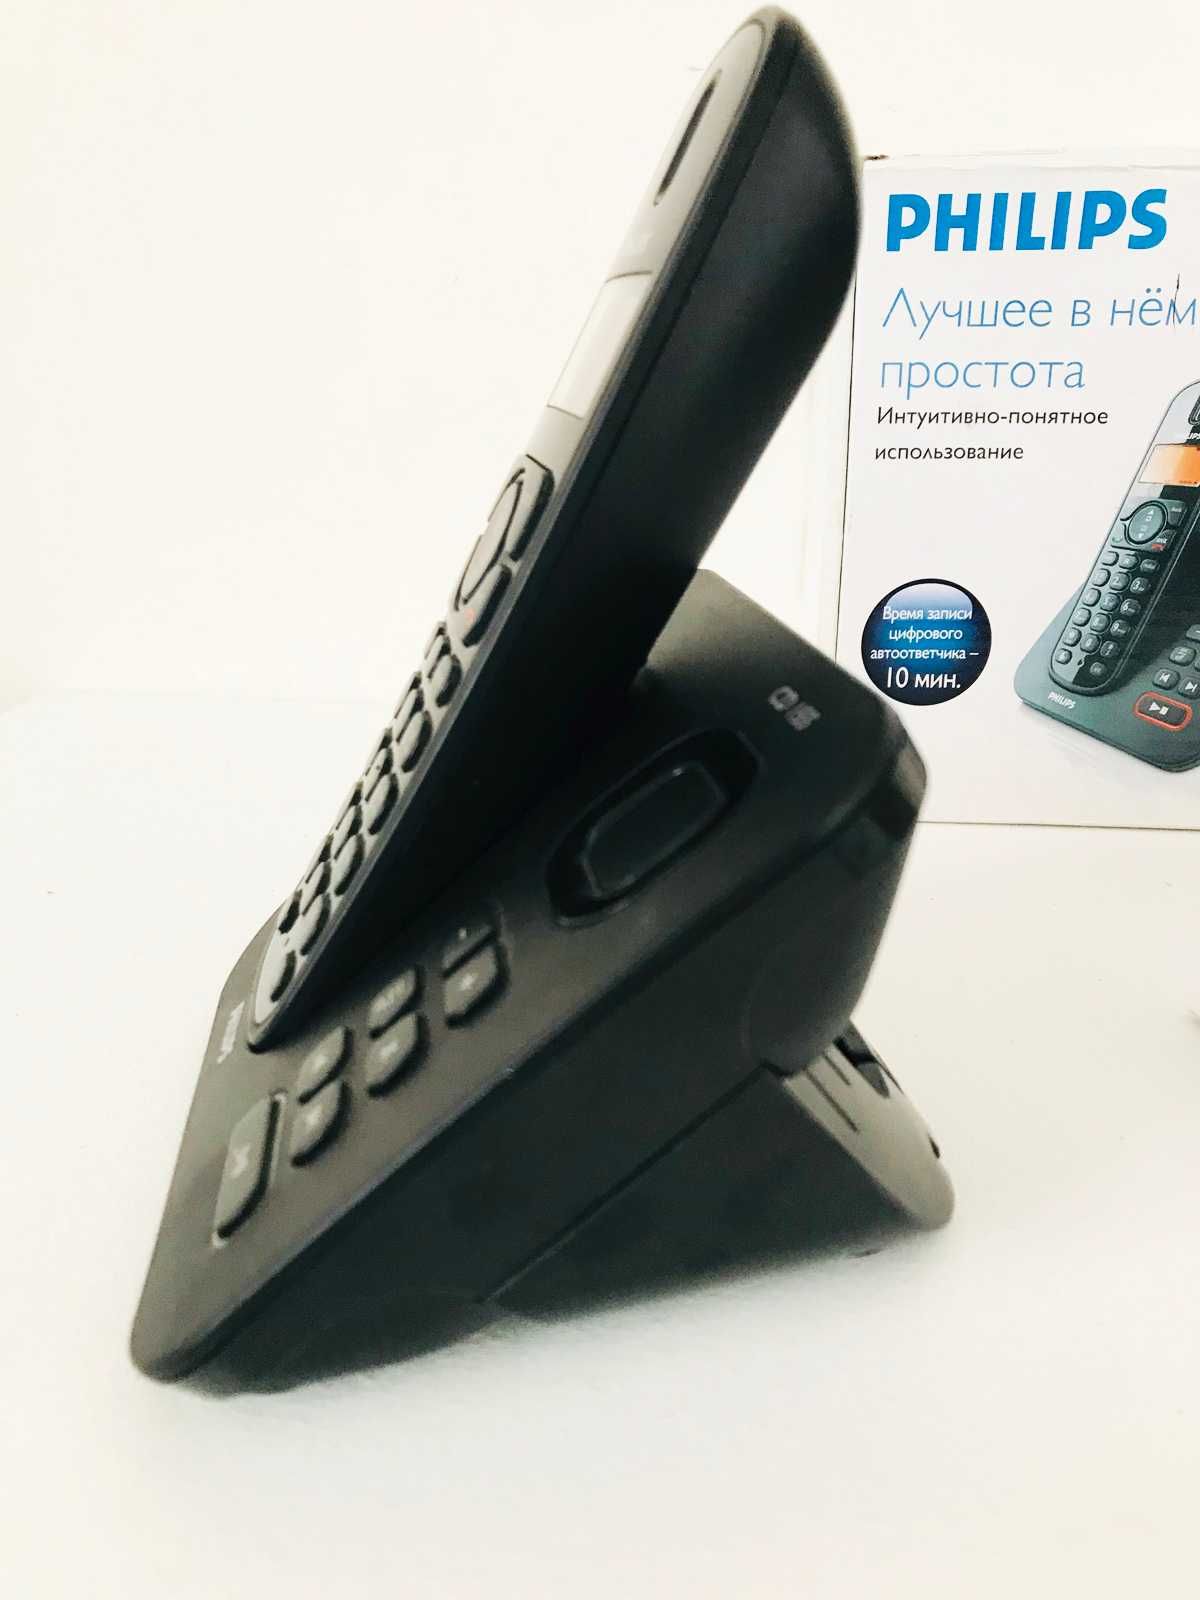 Беспроводной телефон Philips CD 155 с автоответчиком. Новый.